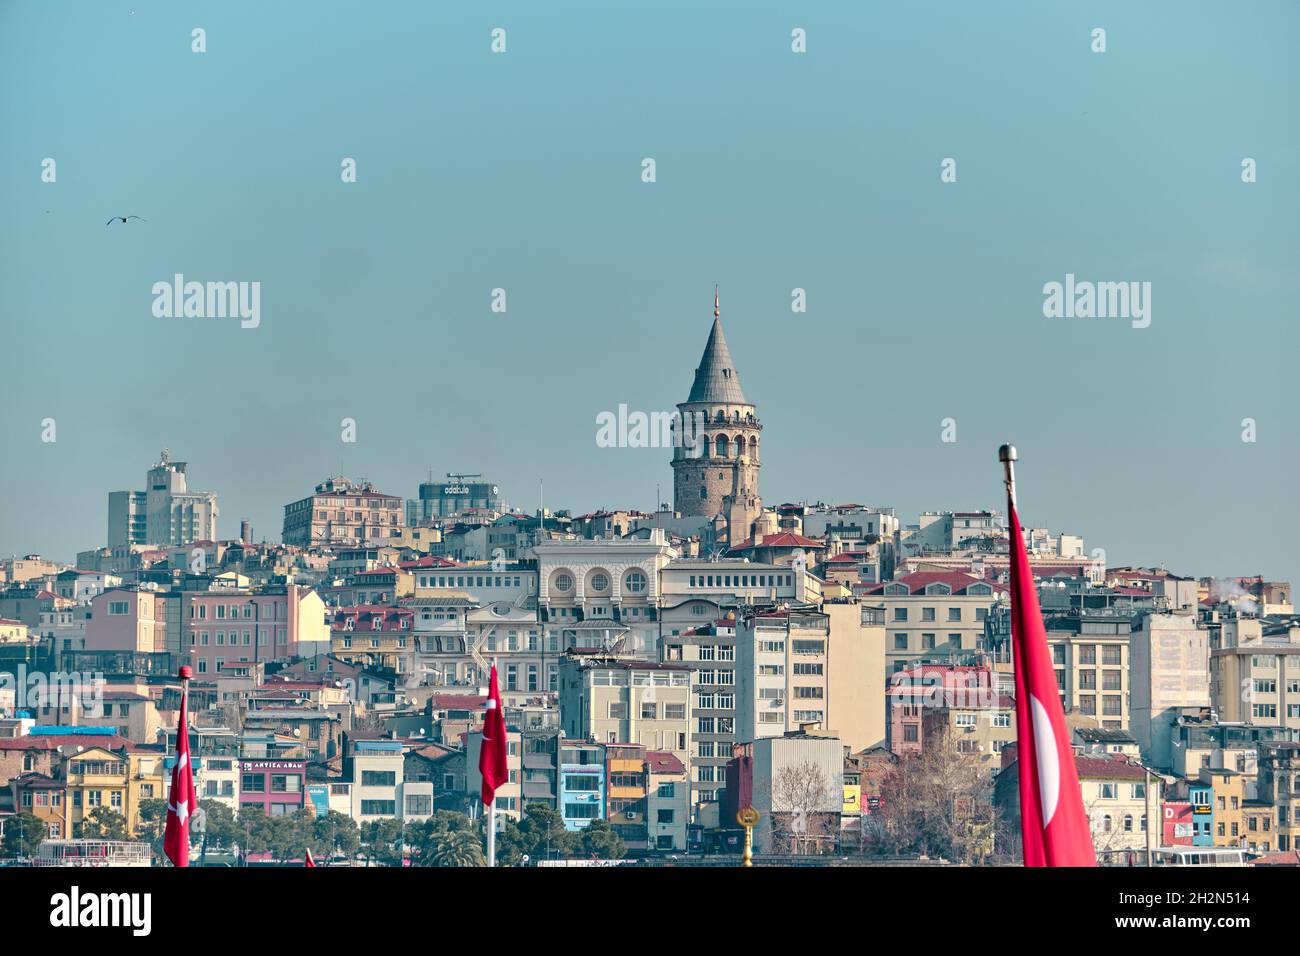 Der berühmte galata-Turm von istanbul wurde von istanbul bosphorus und eminonu mit vielen türkischen Flaggen während regnerischer Tage und bewölktem Himmel fotografiert. Stockfoto